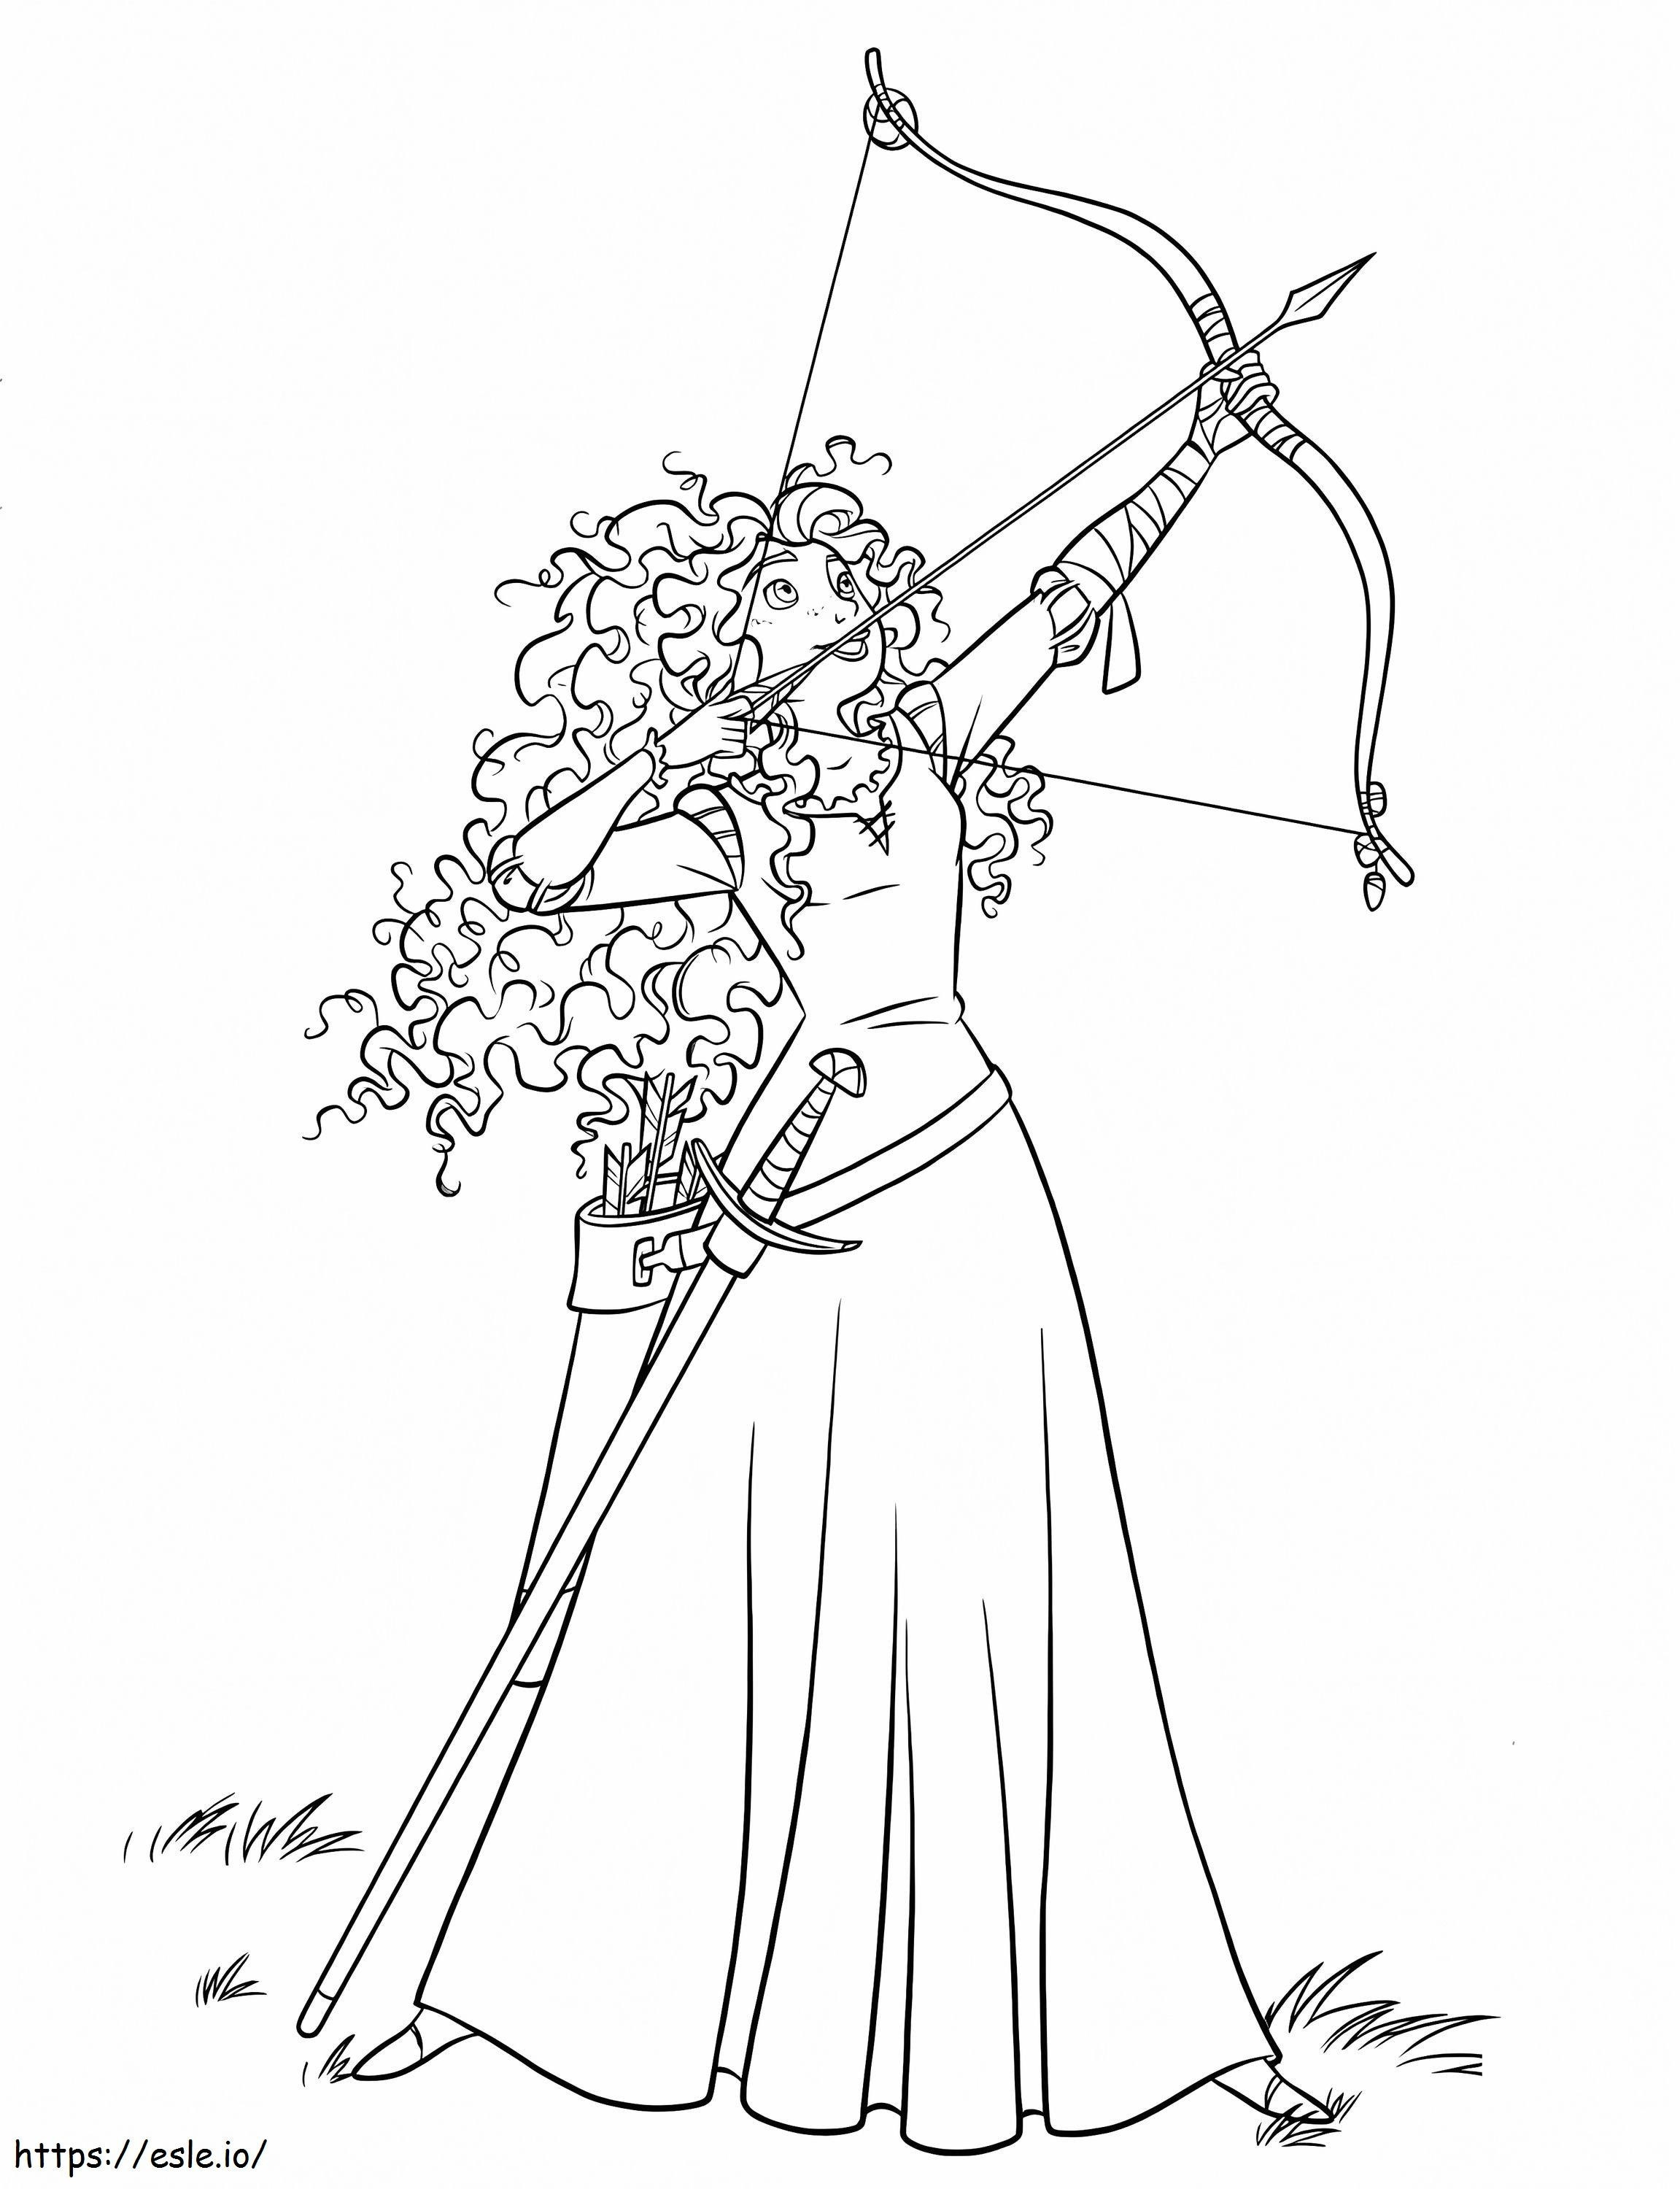 Księżniczka Merida z łukiem i strzałą 2 kolorowanka